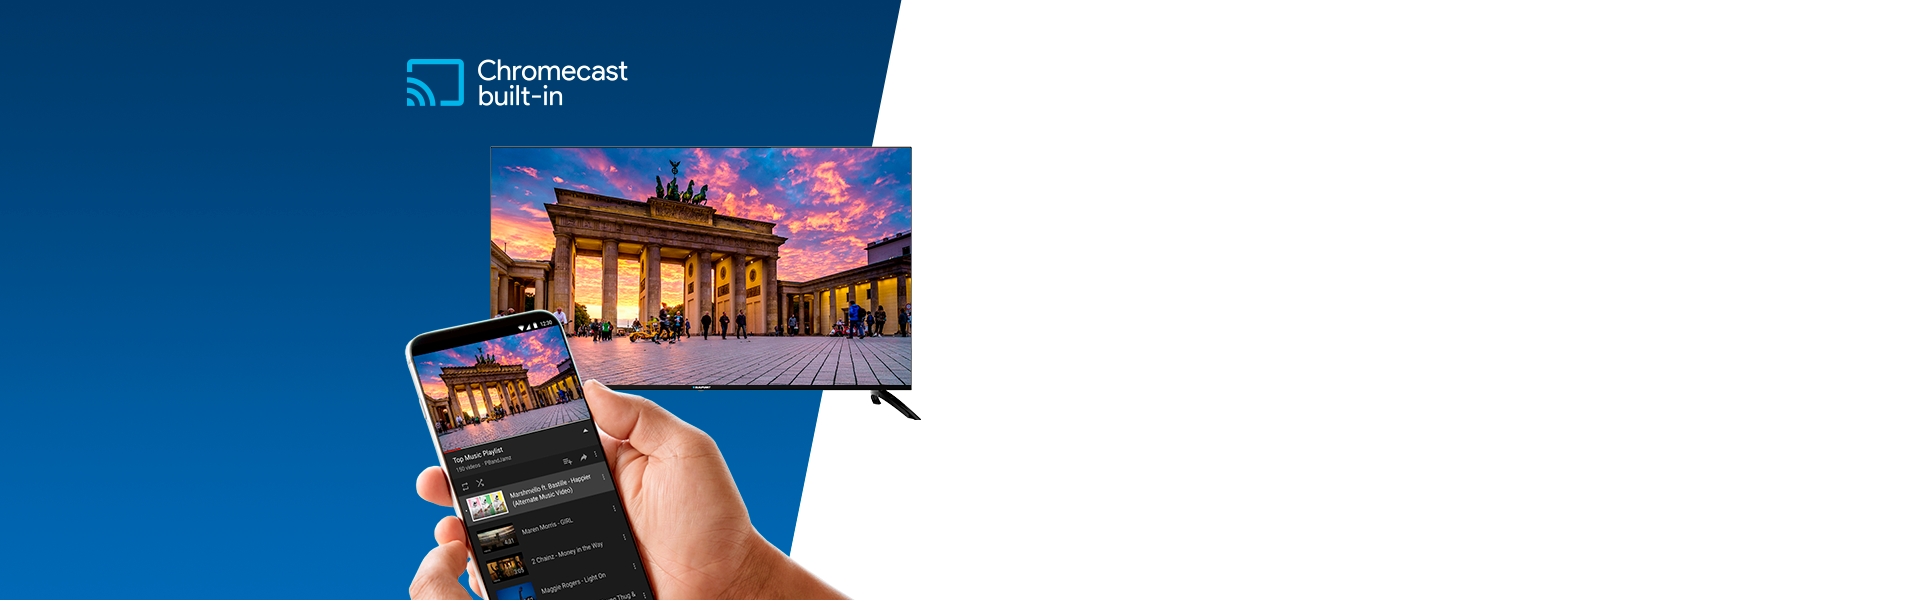 Телевизор UHD 4K Android TV Blaupunkt 50UBC6000